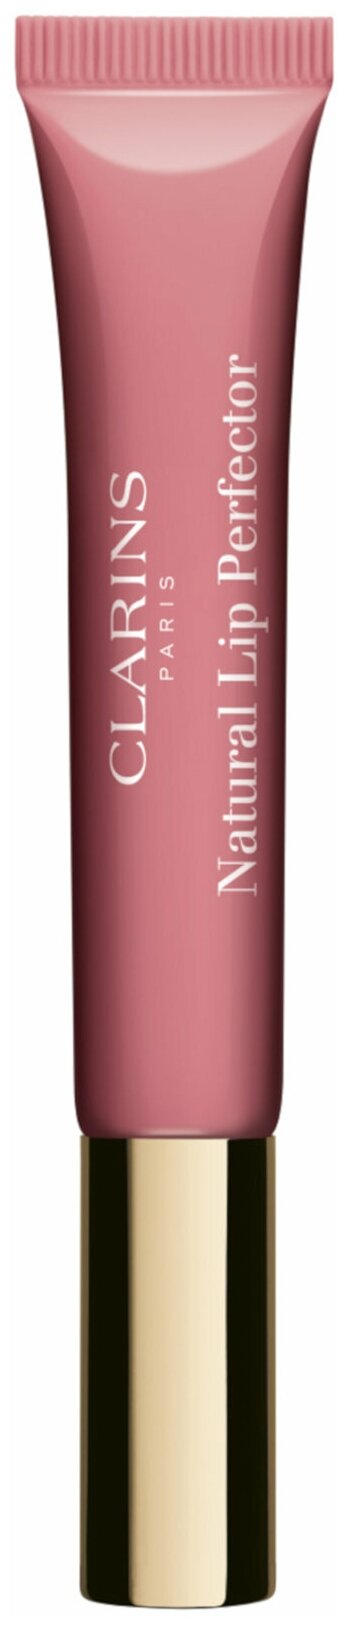 Clarins Блеск для губ Natural Lip Perfector shimmer, 01 rose shimmer